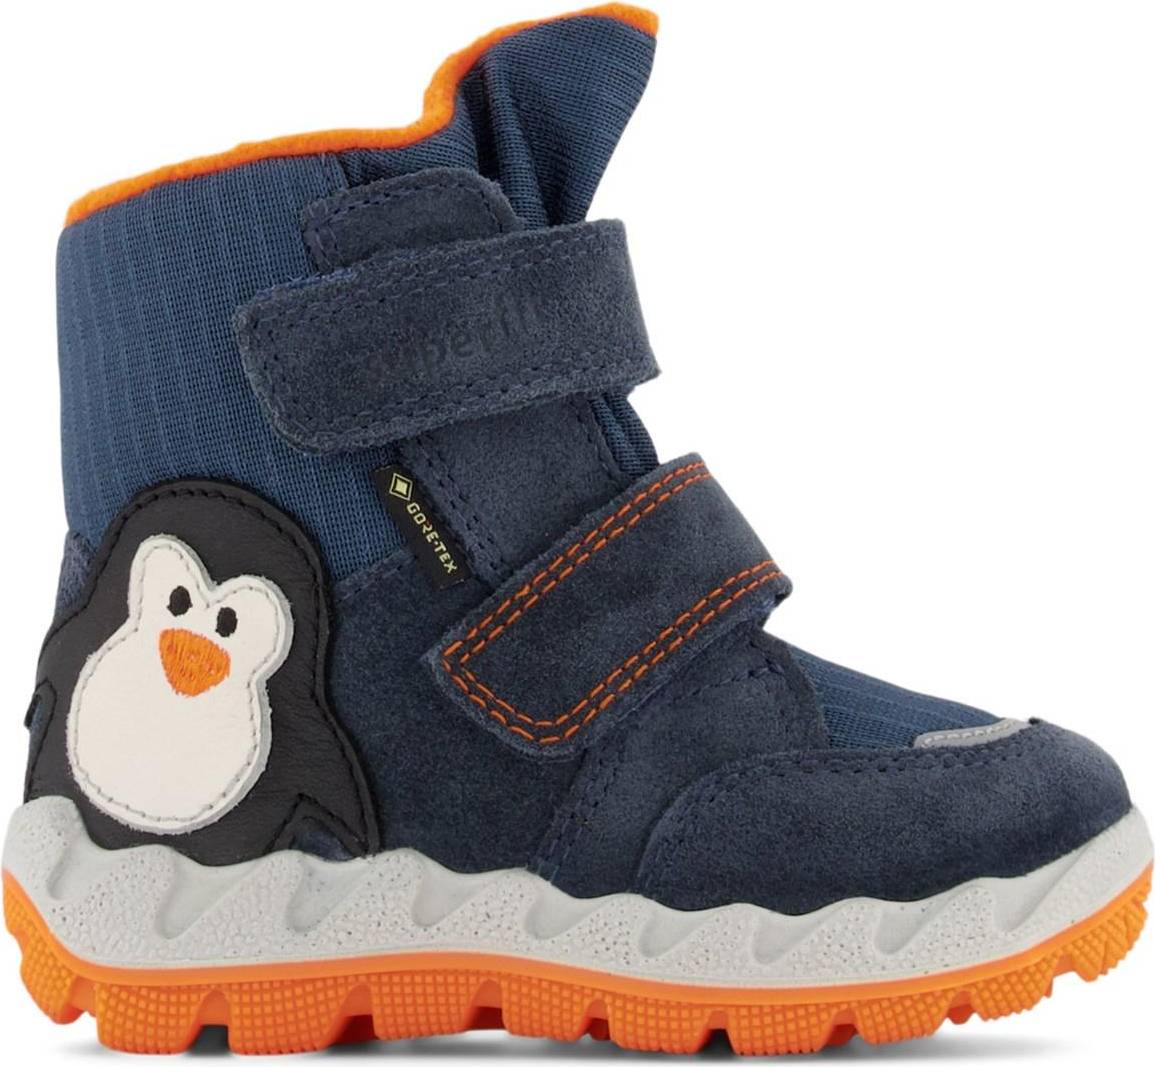  Bild på Superfit Icebird Boots - Blue/Orange vinterskor